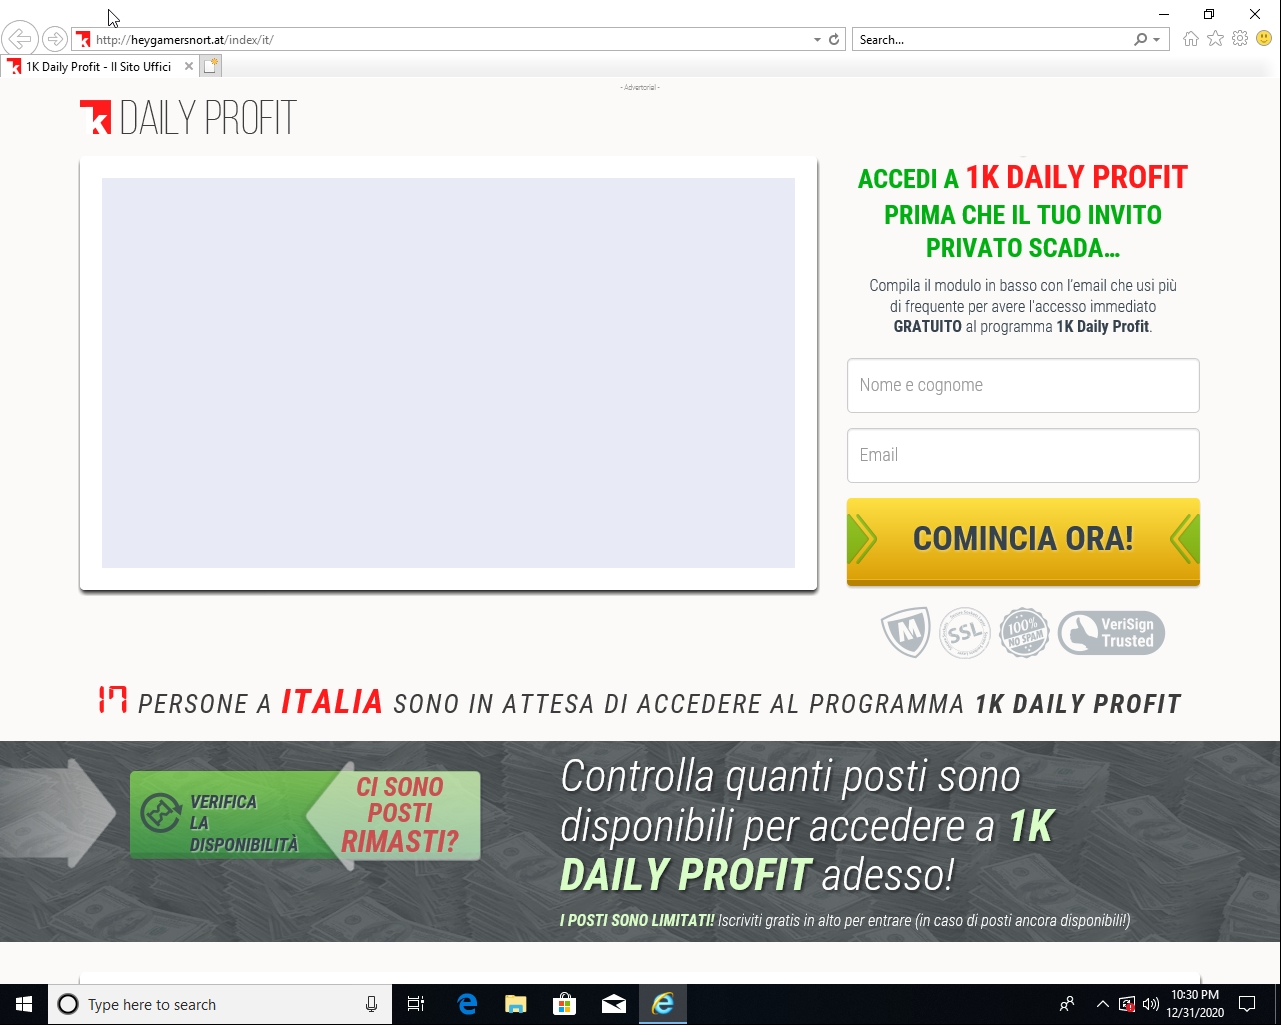 これは、ドメインheygamersnort[.]atによって設定された比較的高品質のWebサイトの例であり、これはイタリア語です。